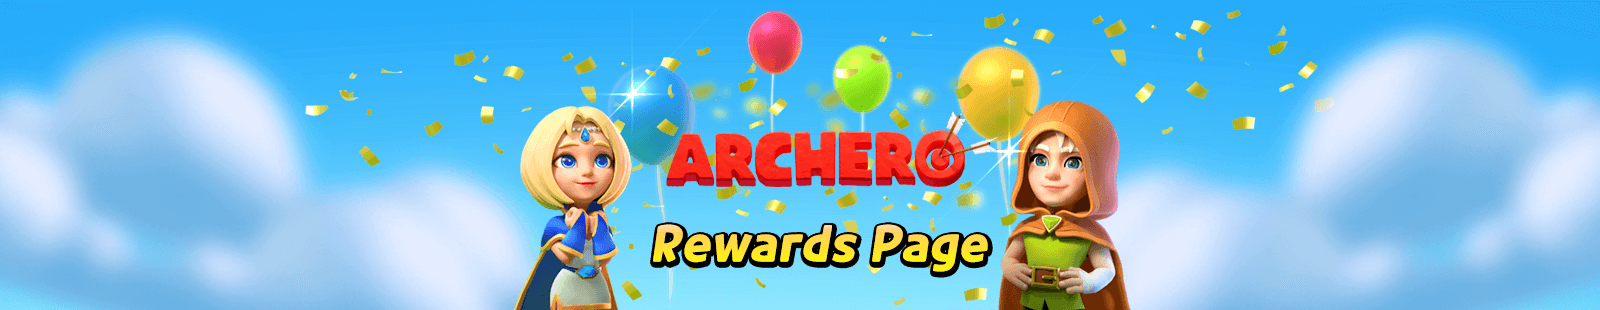 Archero Promo Code Reward Page Picture